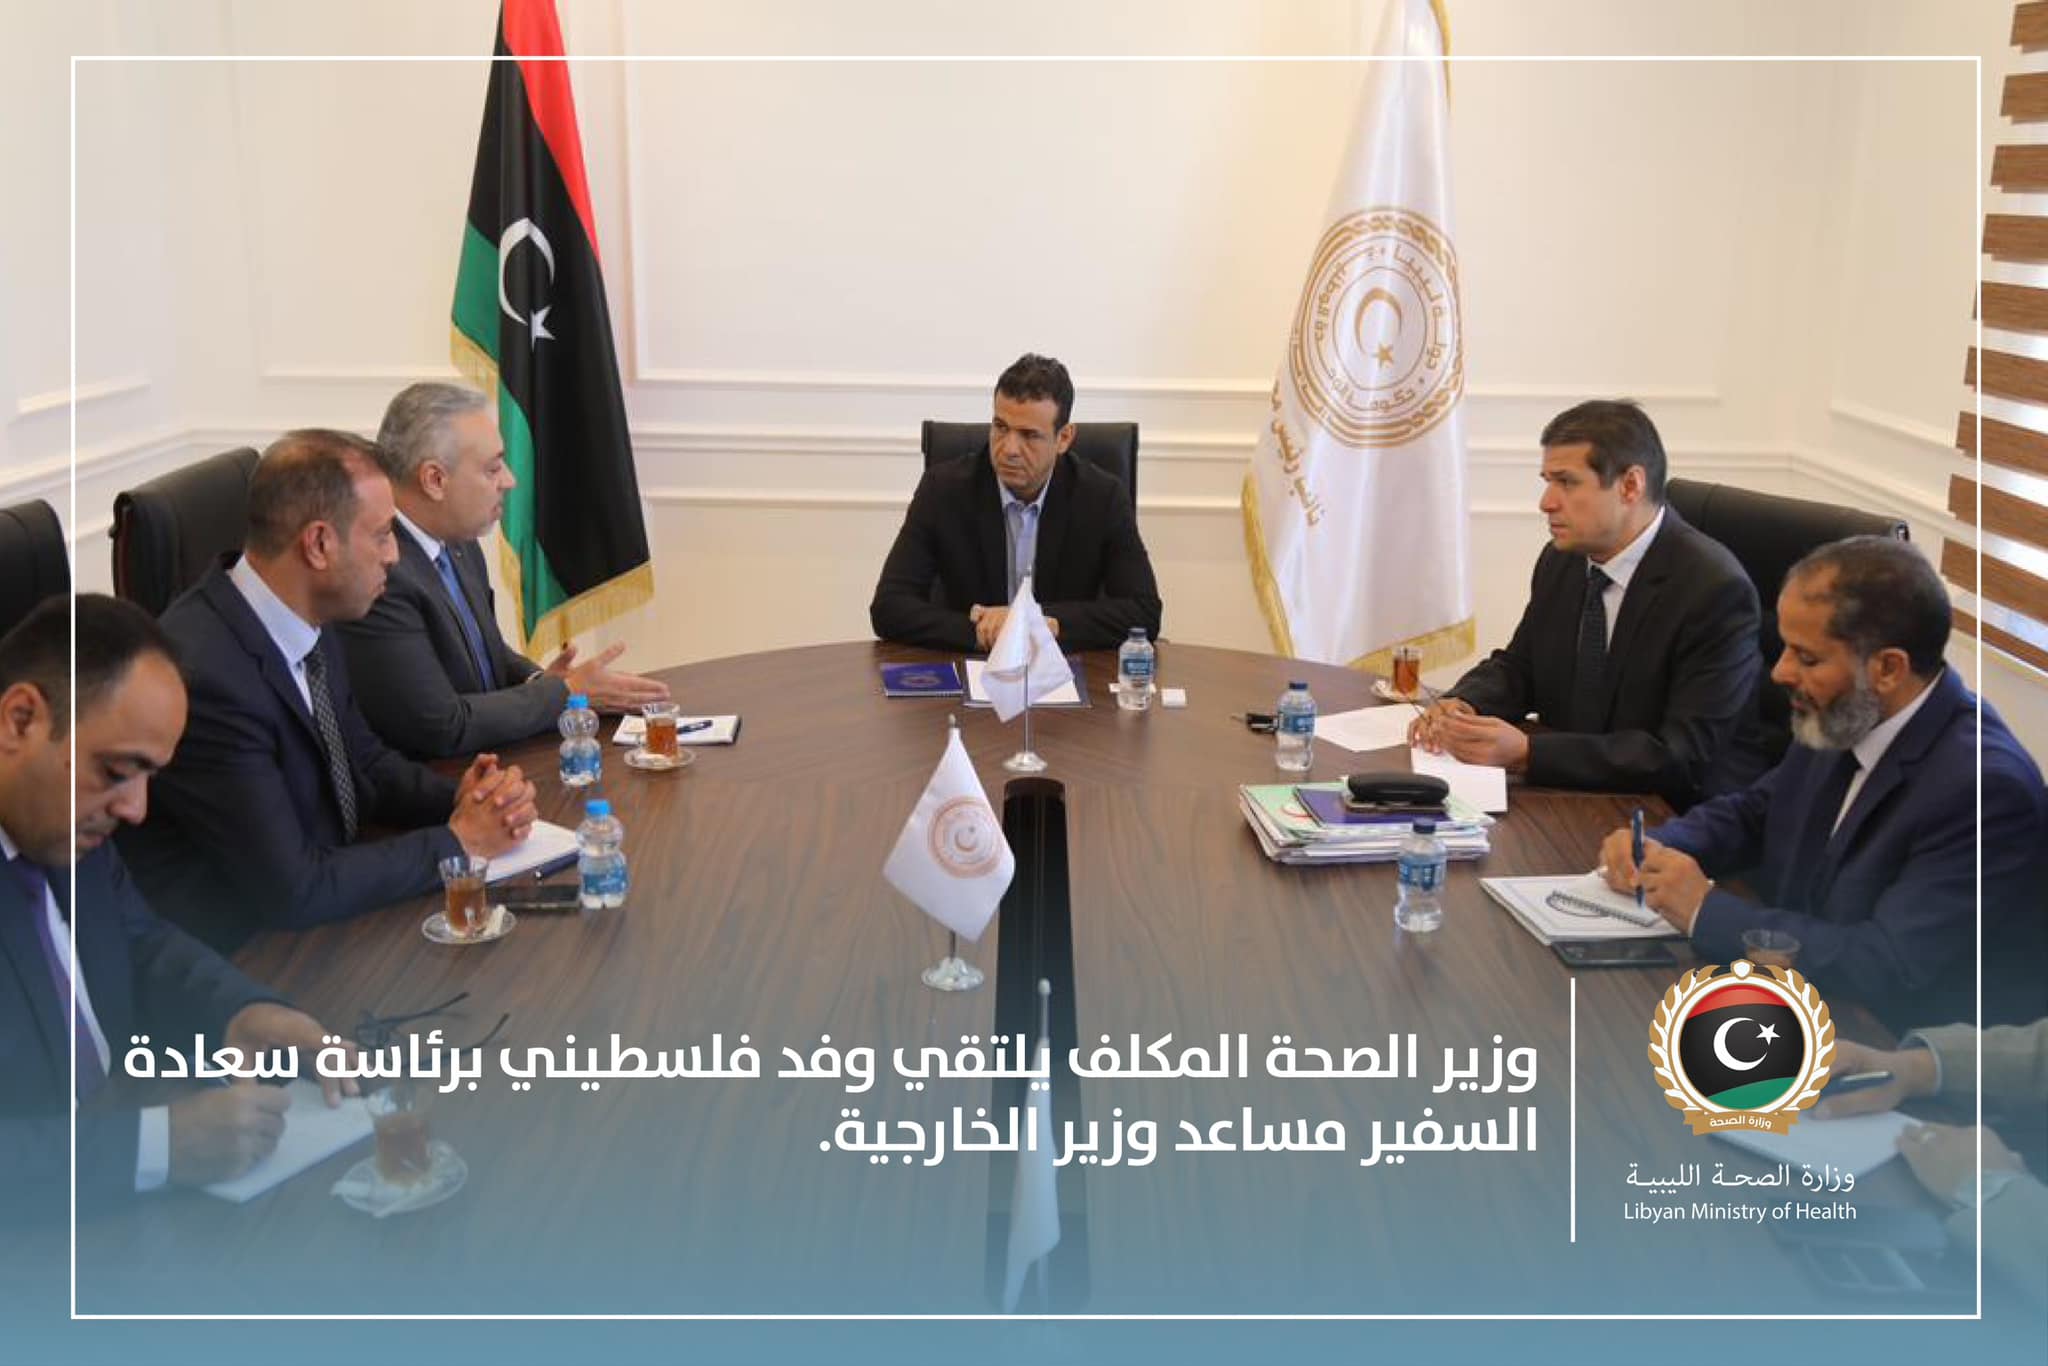 La Libye et la Palestine conviennent de renforcer la coopération entre les deux pays dans divers domaines notamment la santé.